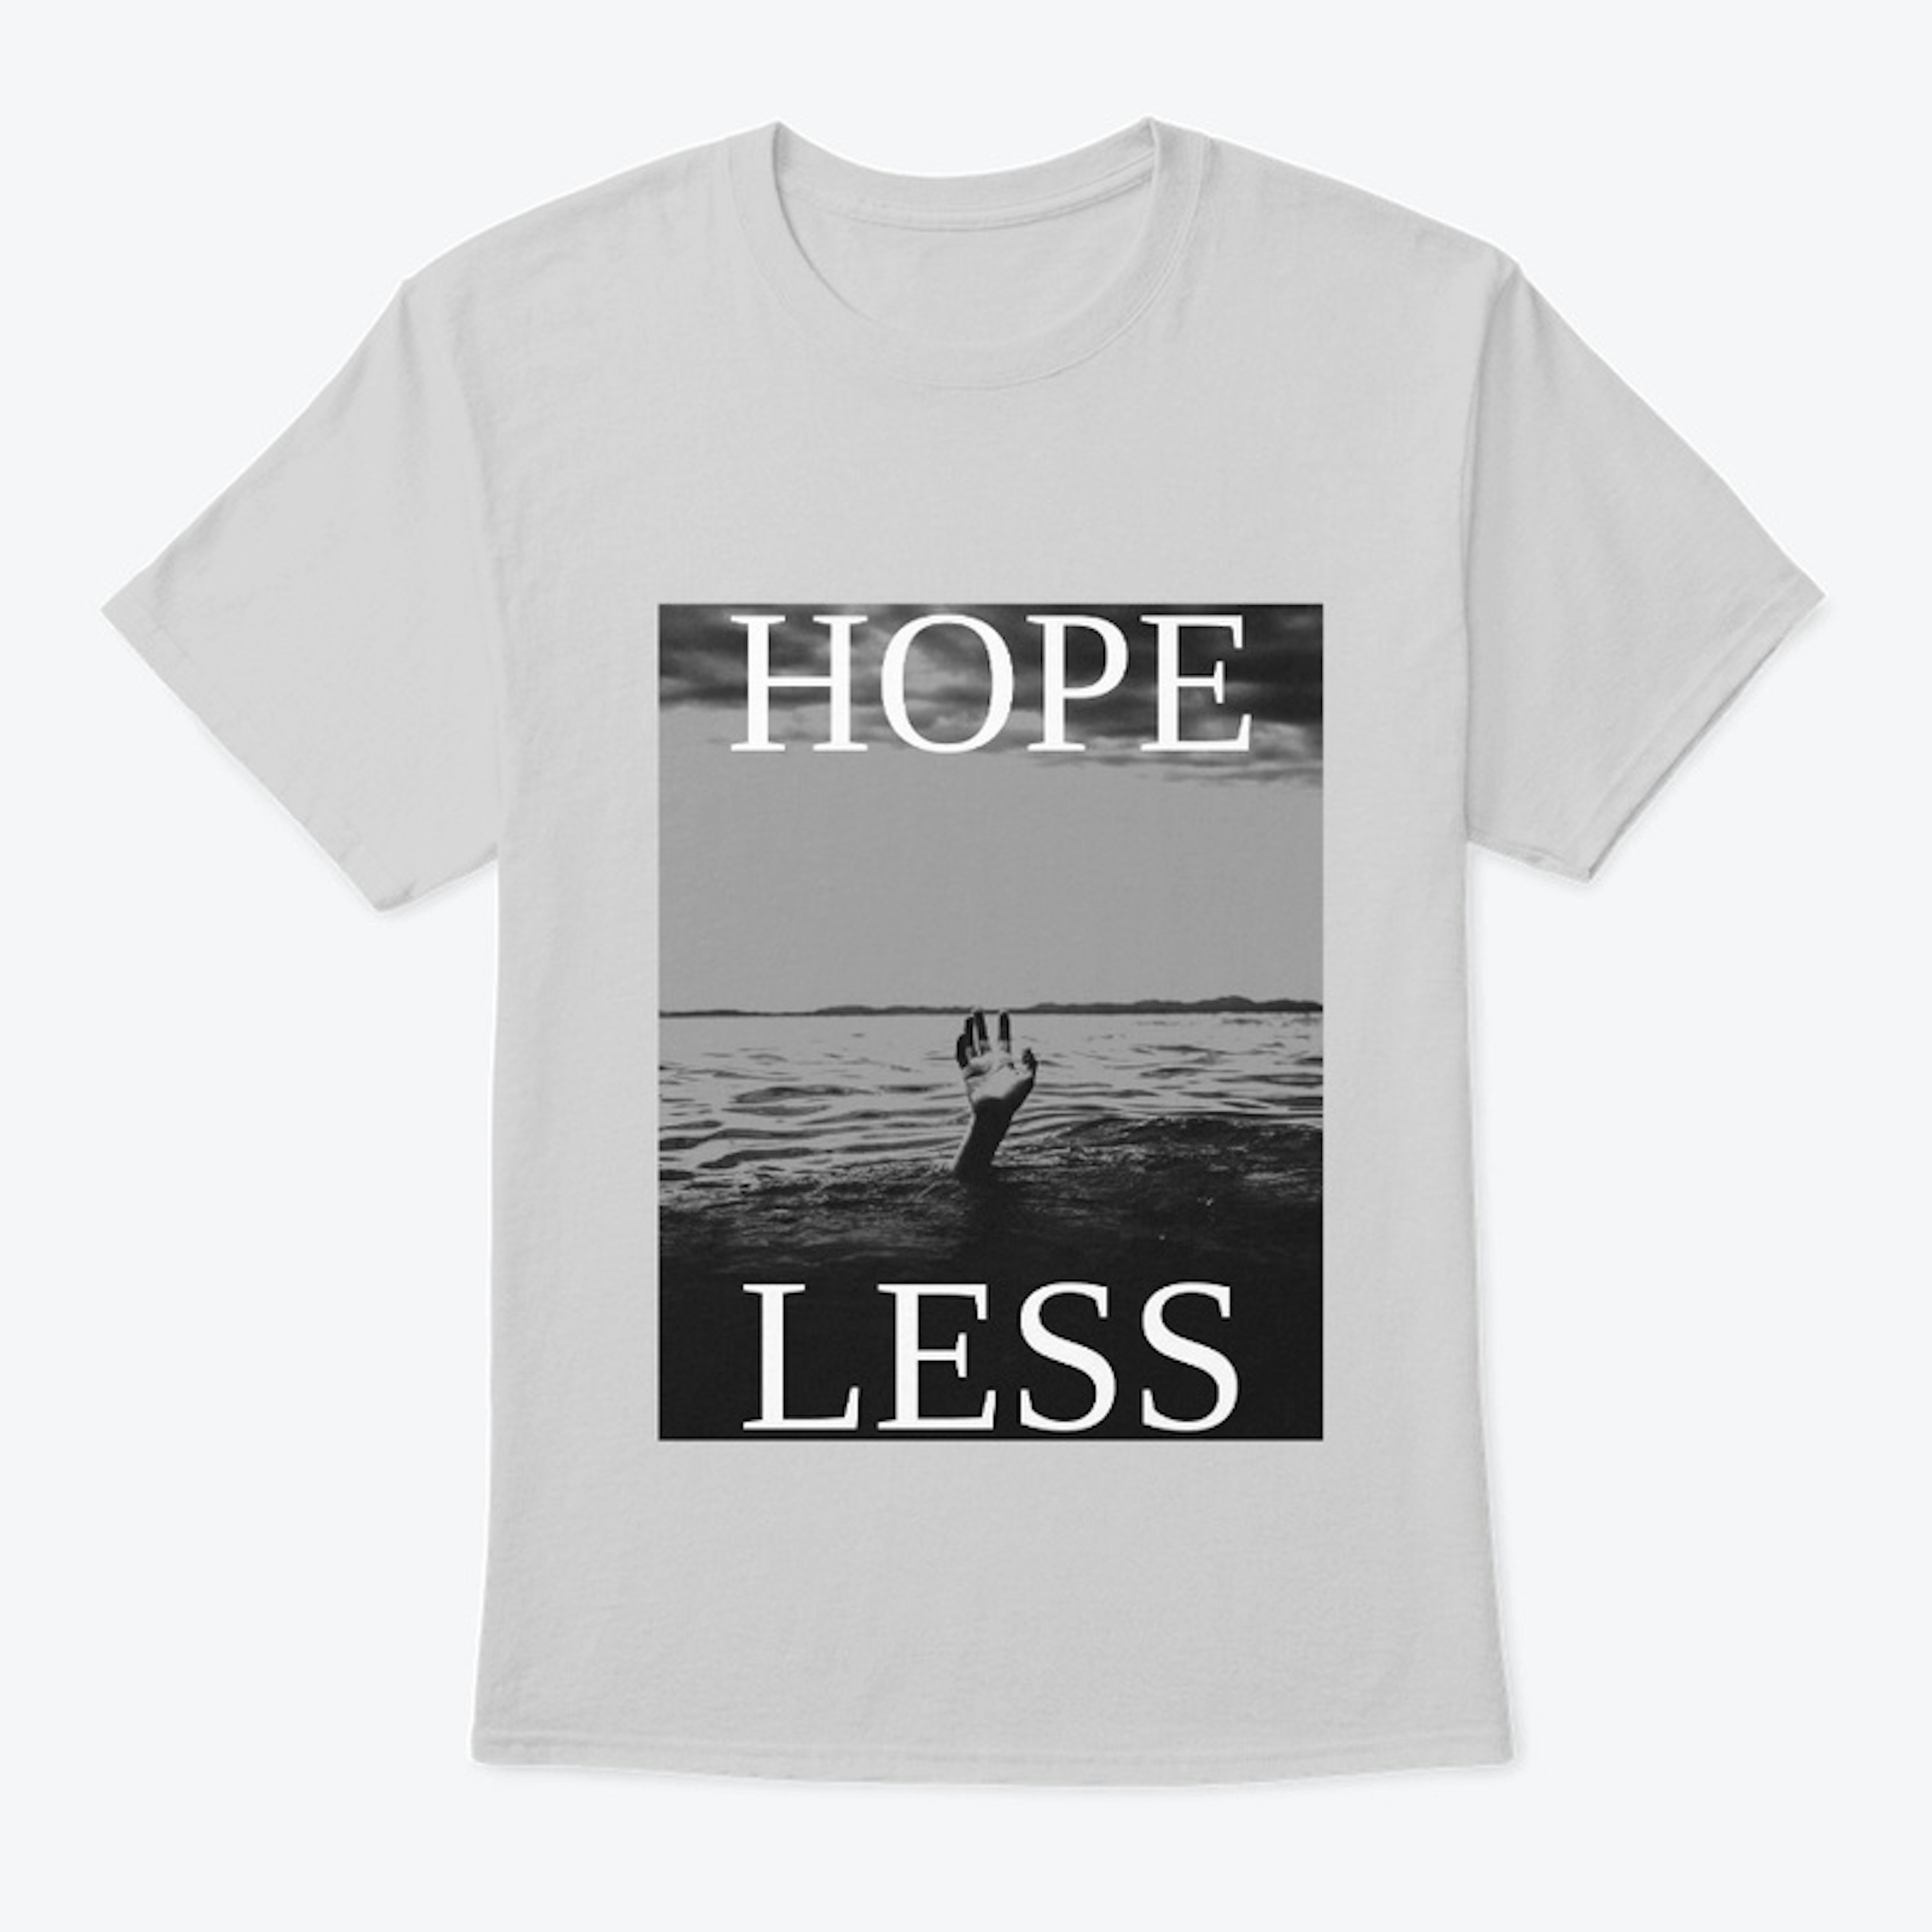 Hope Less (Hopeless)